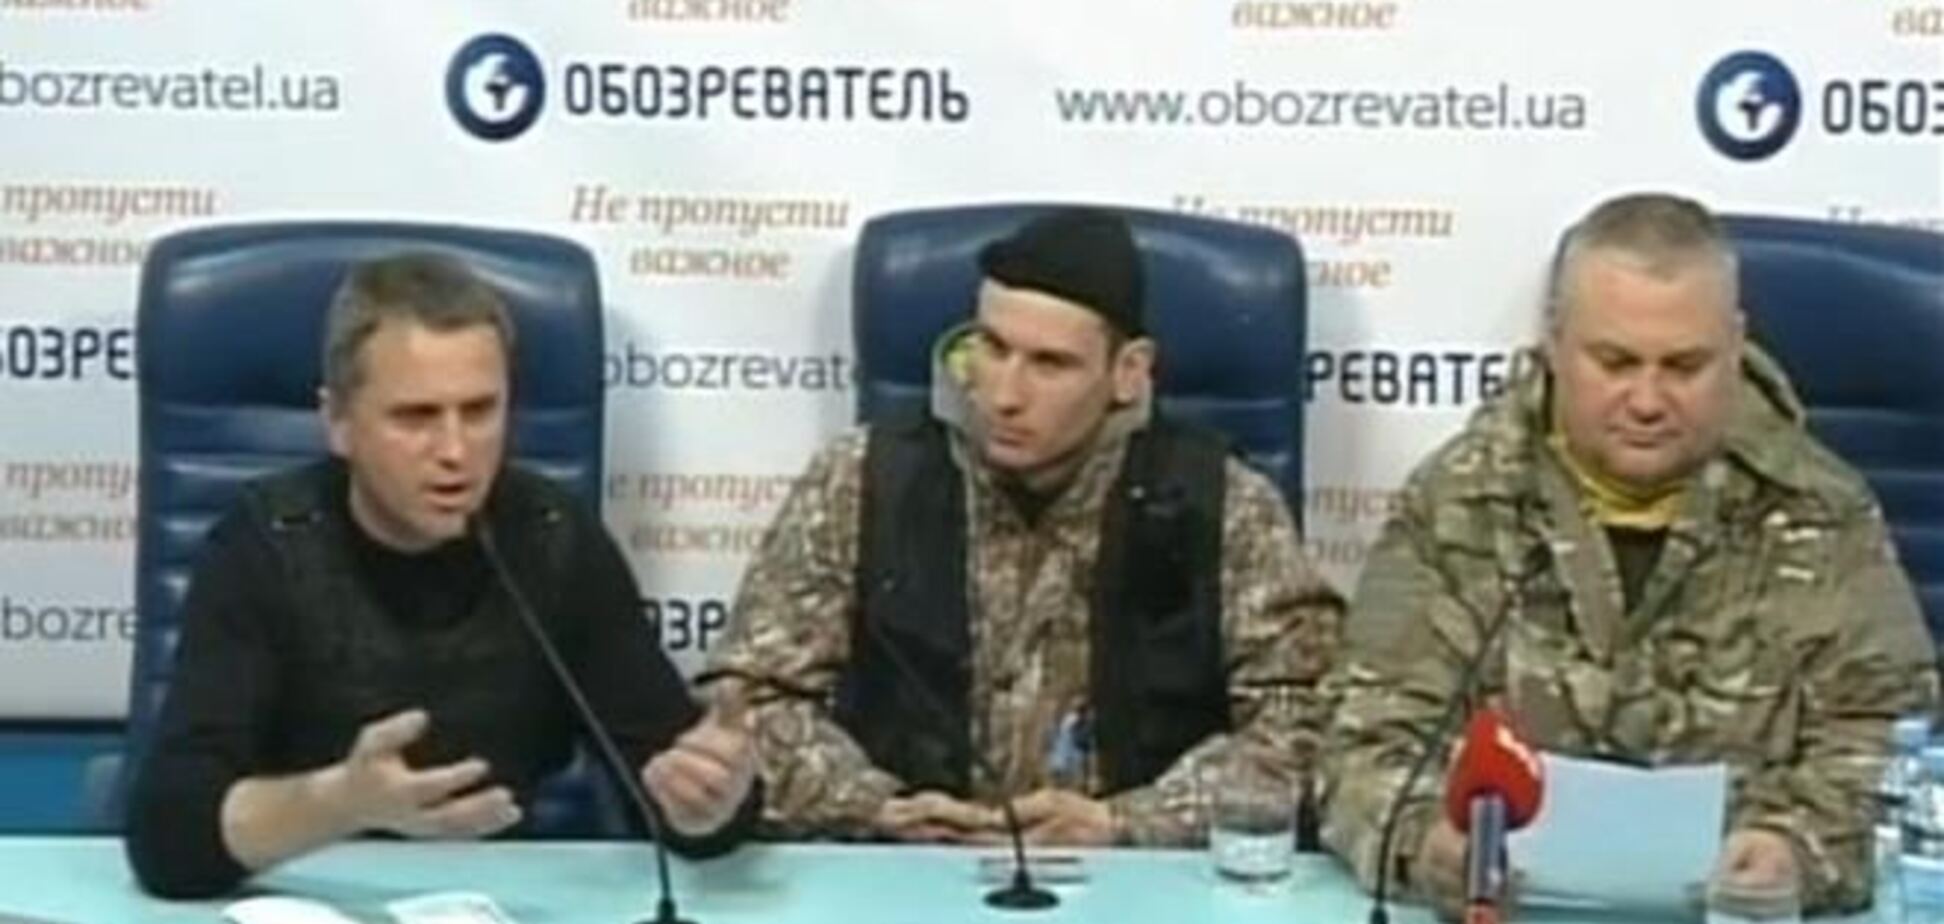 Координационный совет Майдана поругался с Самообороной Майдана в прямом эфире ОБОЗа